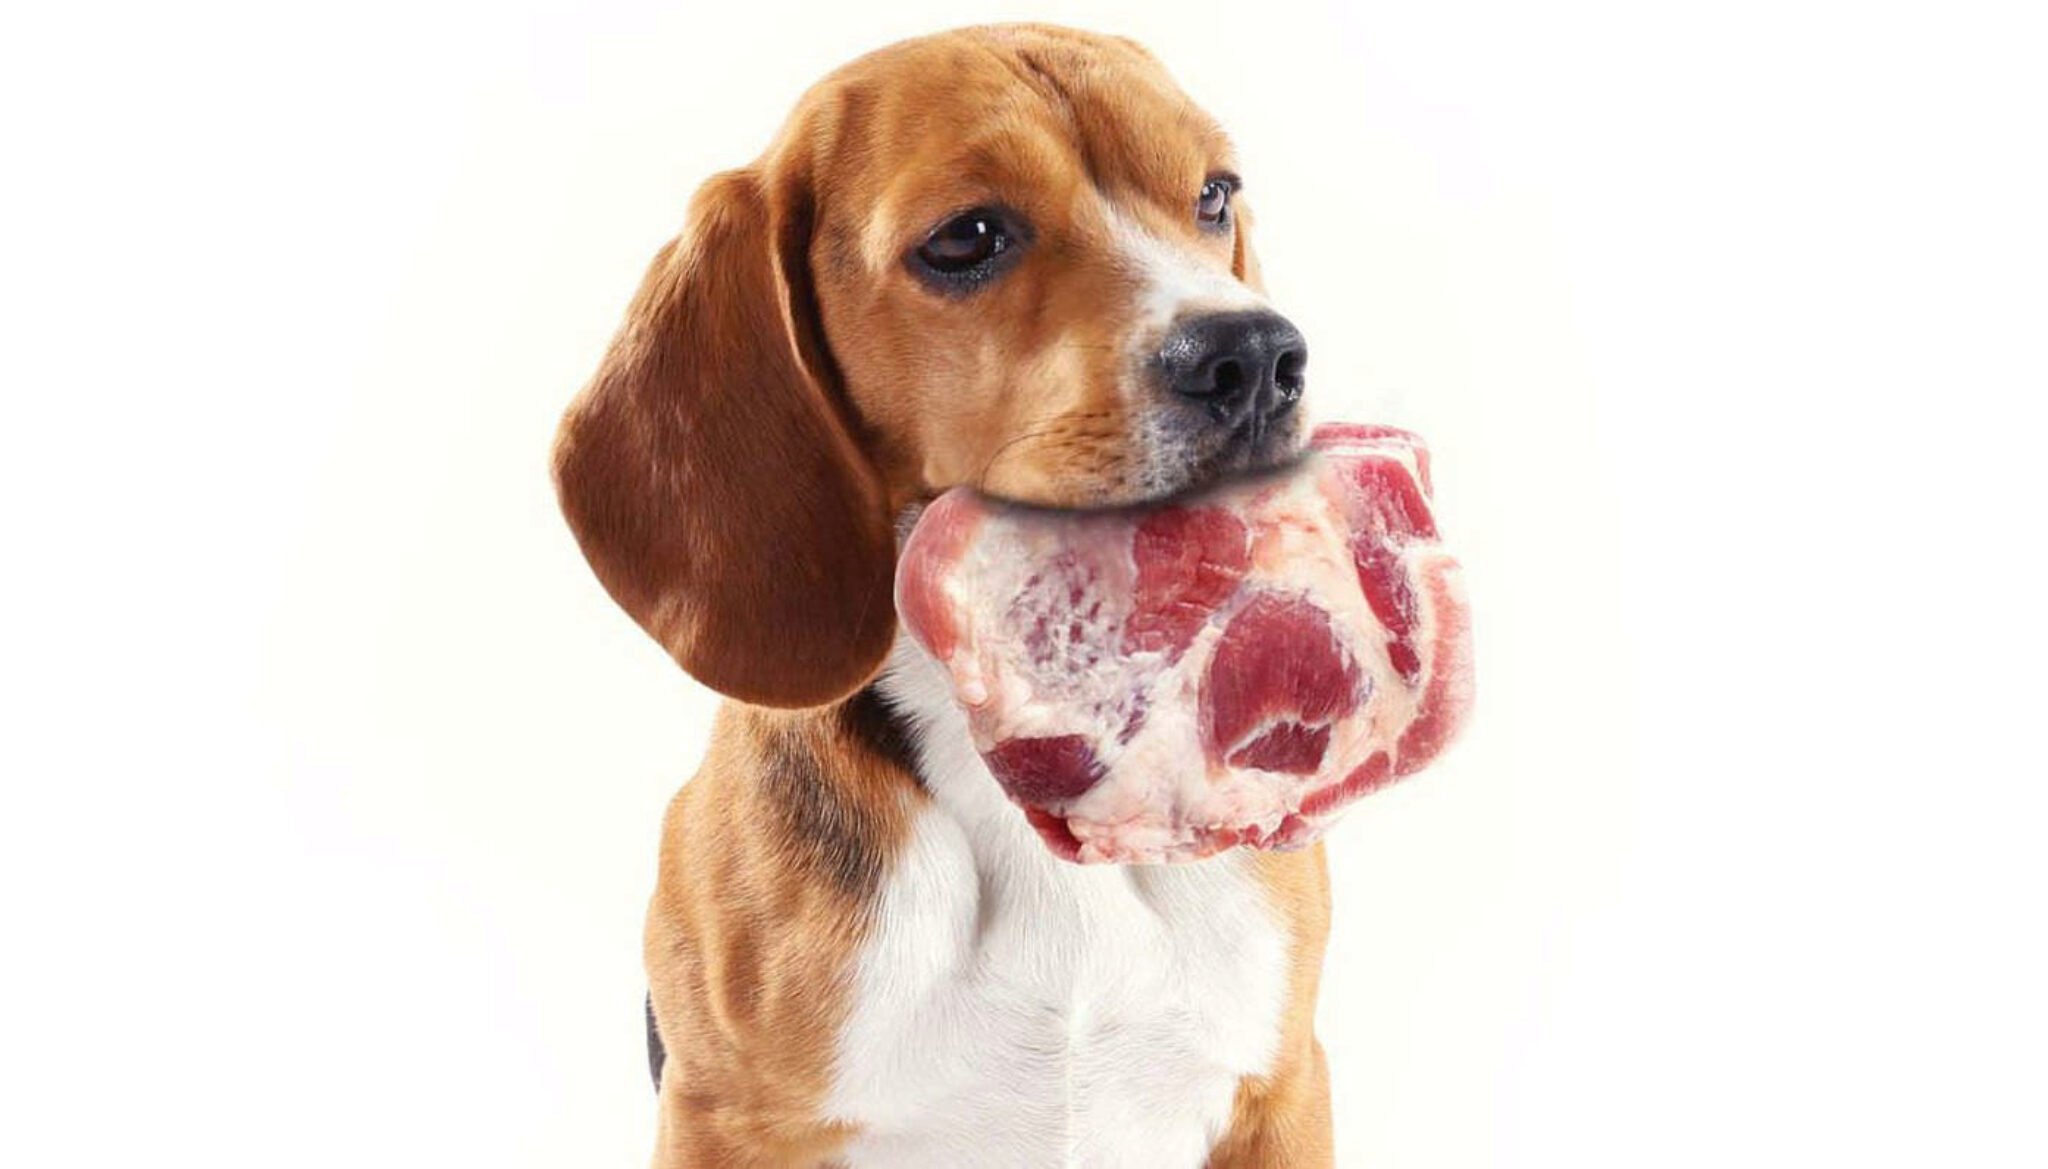 Reagle Rottweiler E Beagle Mix. Informazioni, Immagini E Fatti